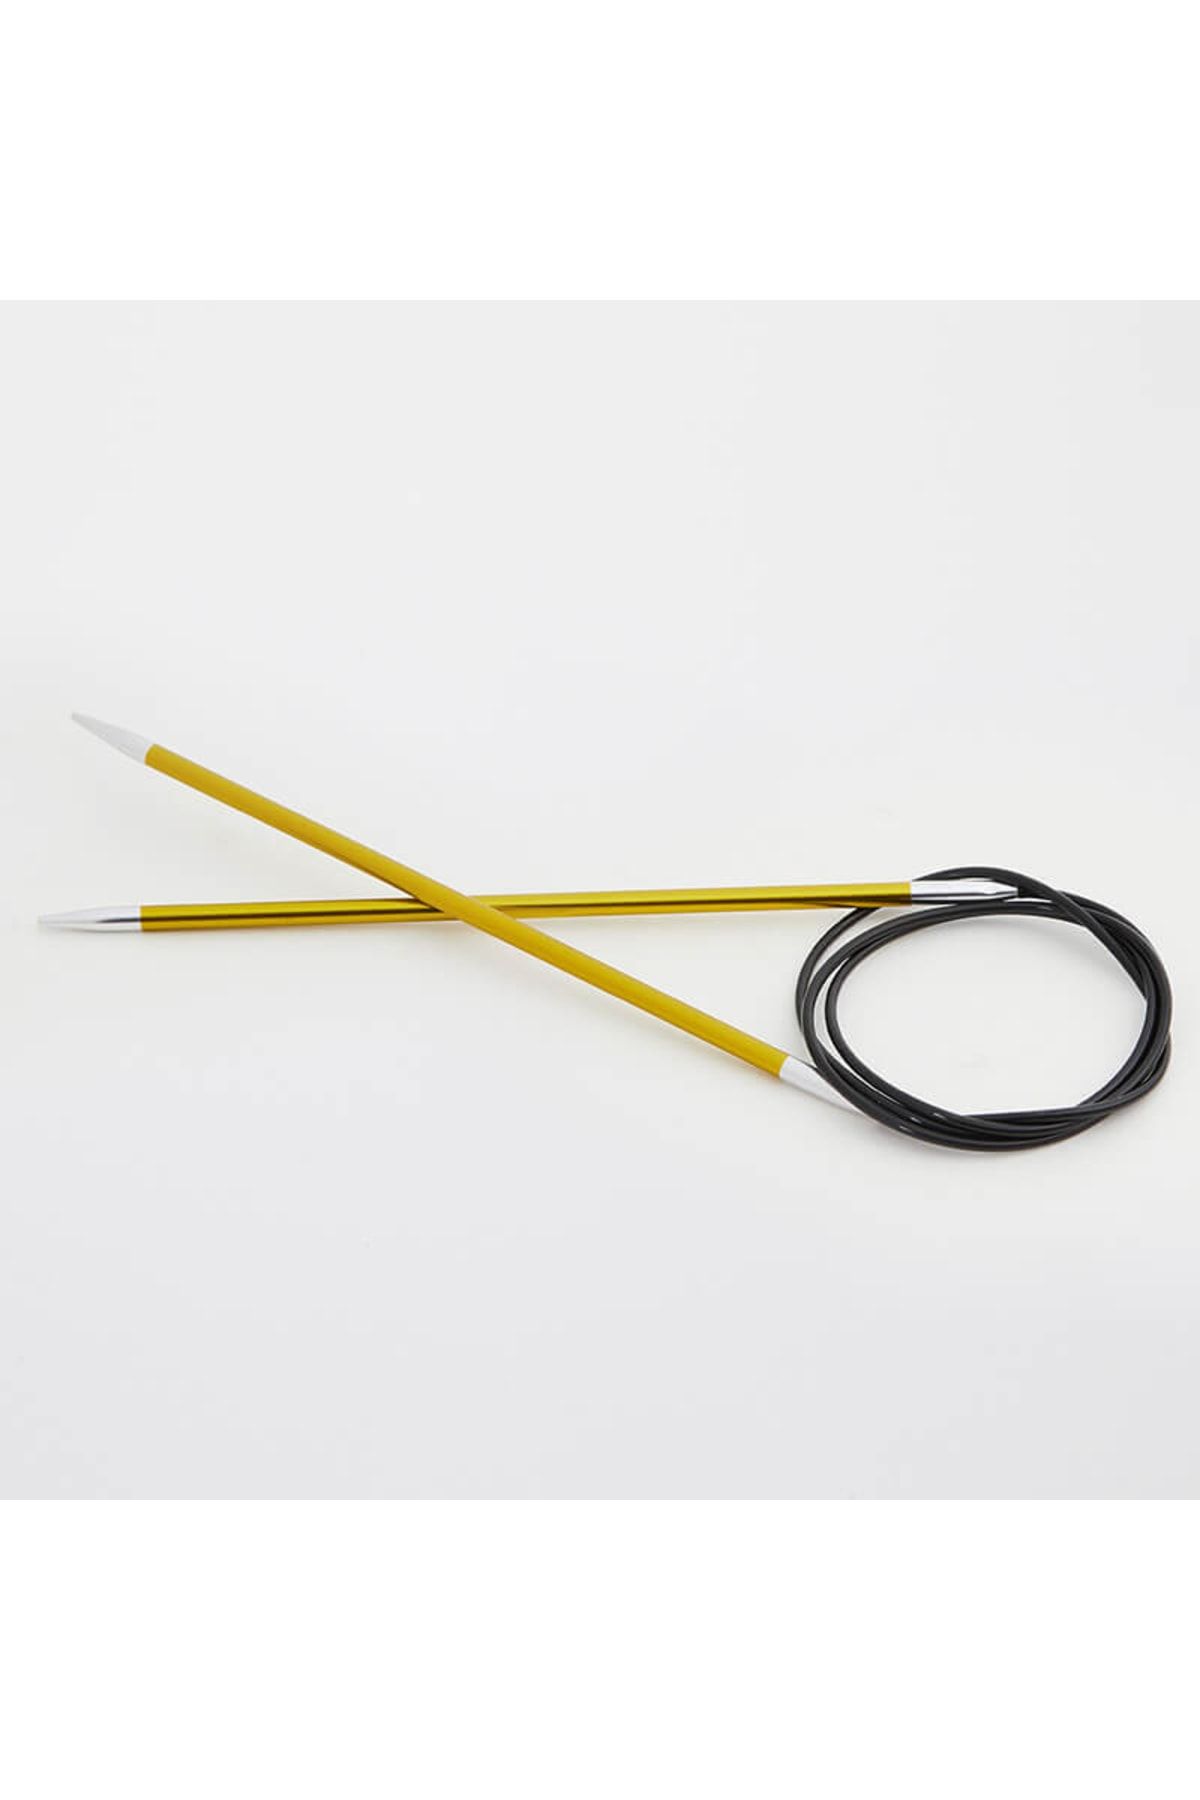 Knitpro Zing Sabit Misinalı Şiş 100cm / 3,50mm